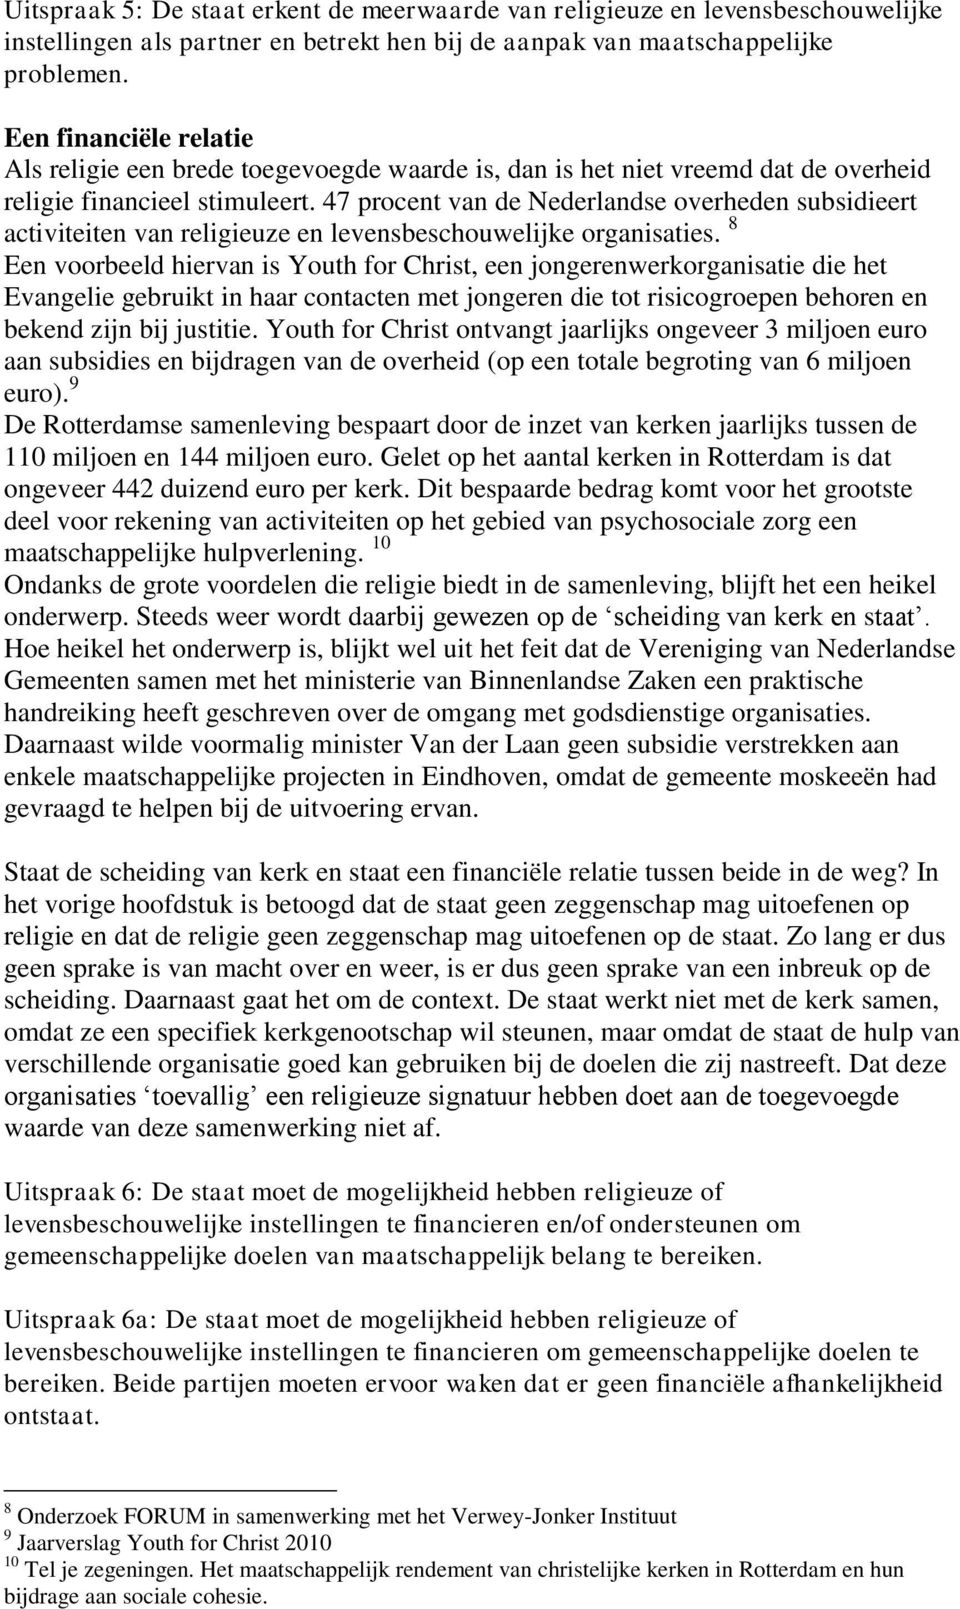 47 procent van de Nederlandse overheden subsidieert activiteiten van religieuze en levensbeschouwelijke organisaties.